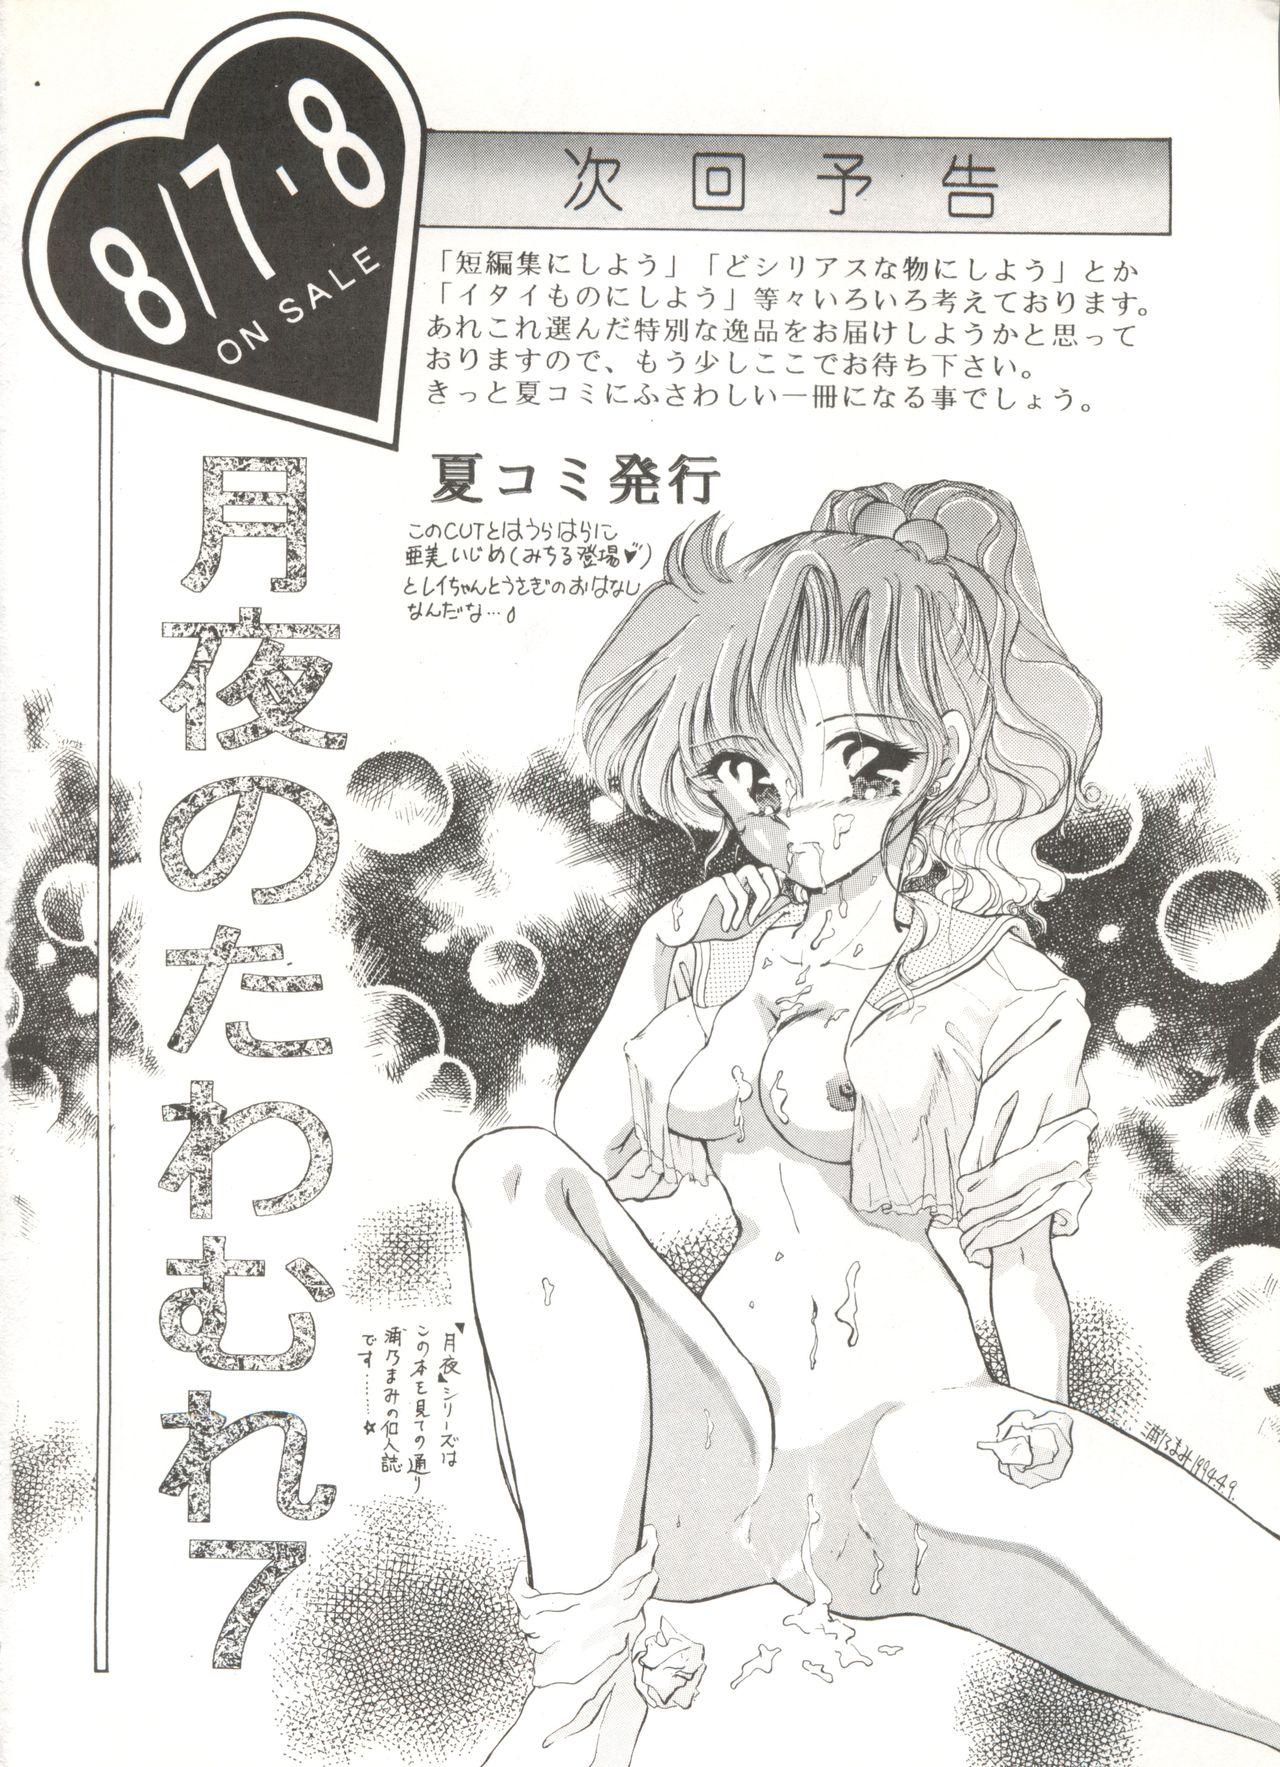 Officesex Tsukiyo no Tawamure 6 - Sailor moon Naked Sluts - Page 54